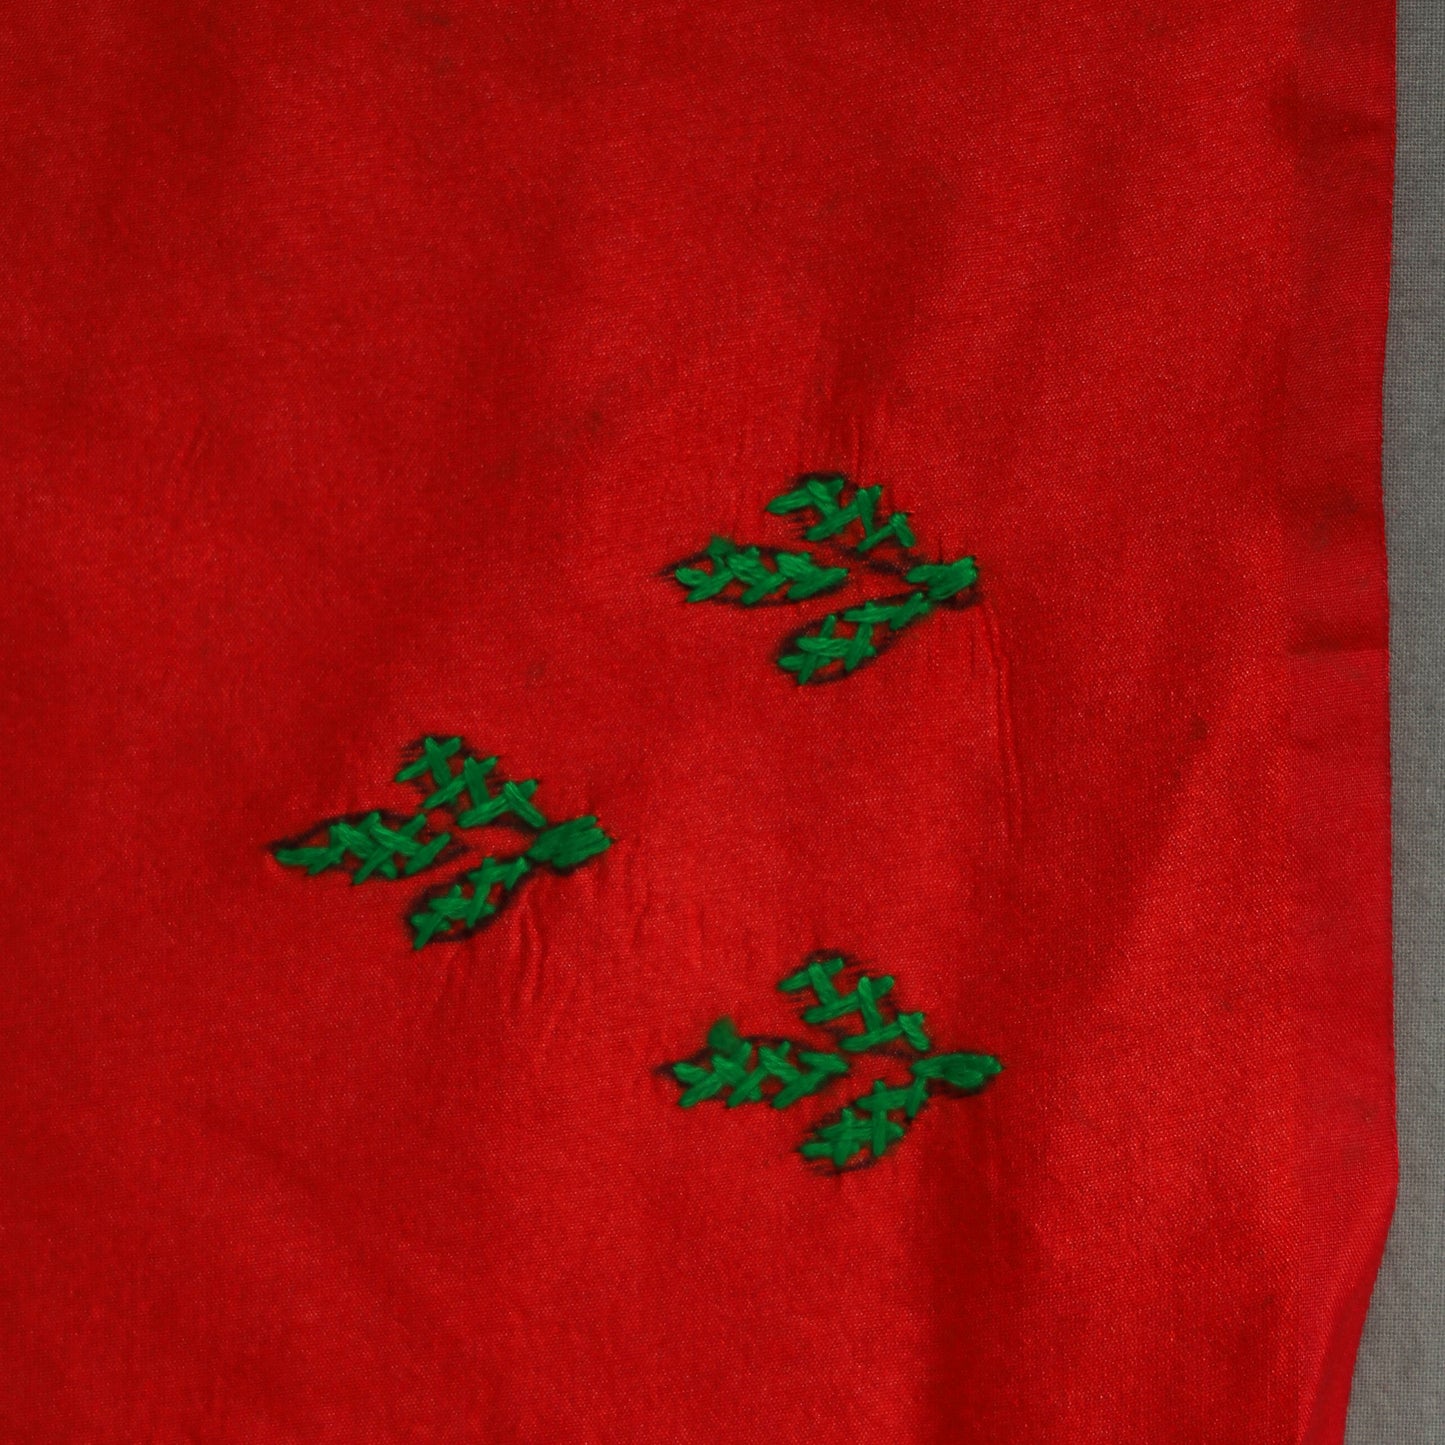 Red - Bengal Nakshi Kantha Embroidery Silk Saree